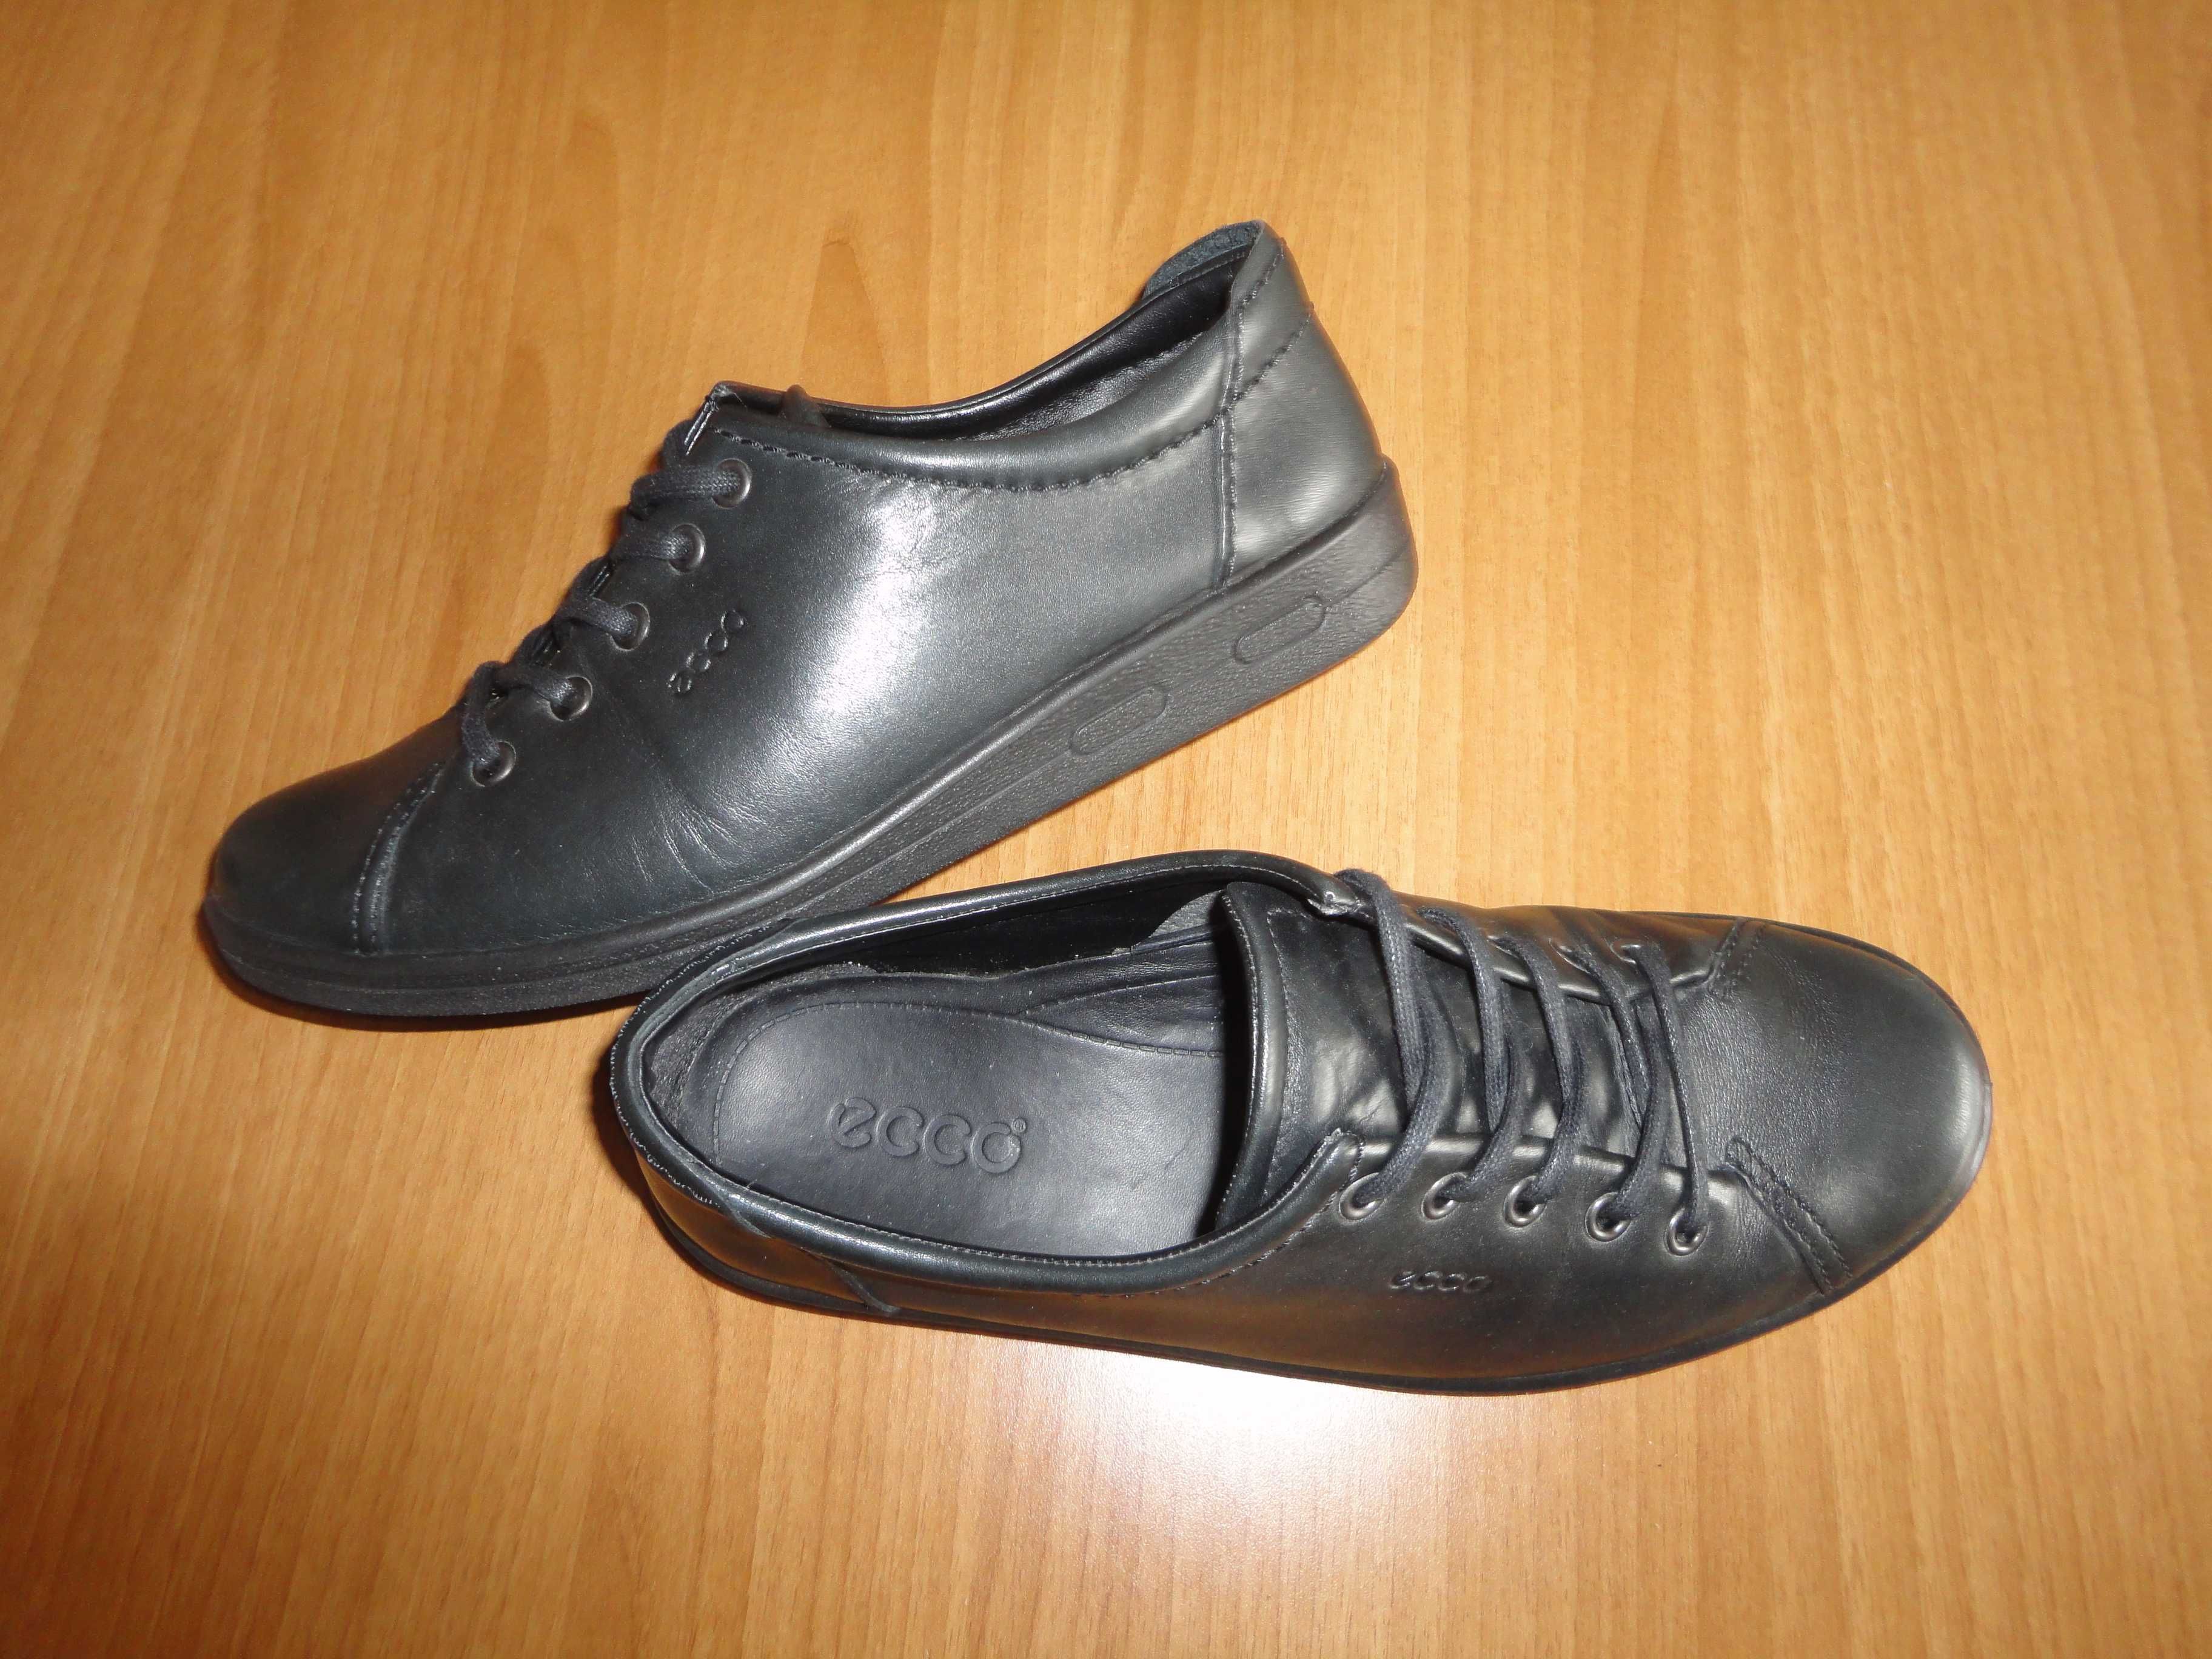 N39 Ecco/естествена кожа/дамски обувки